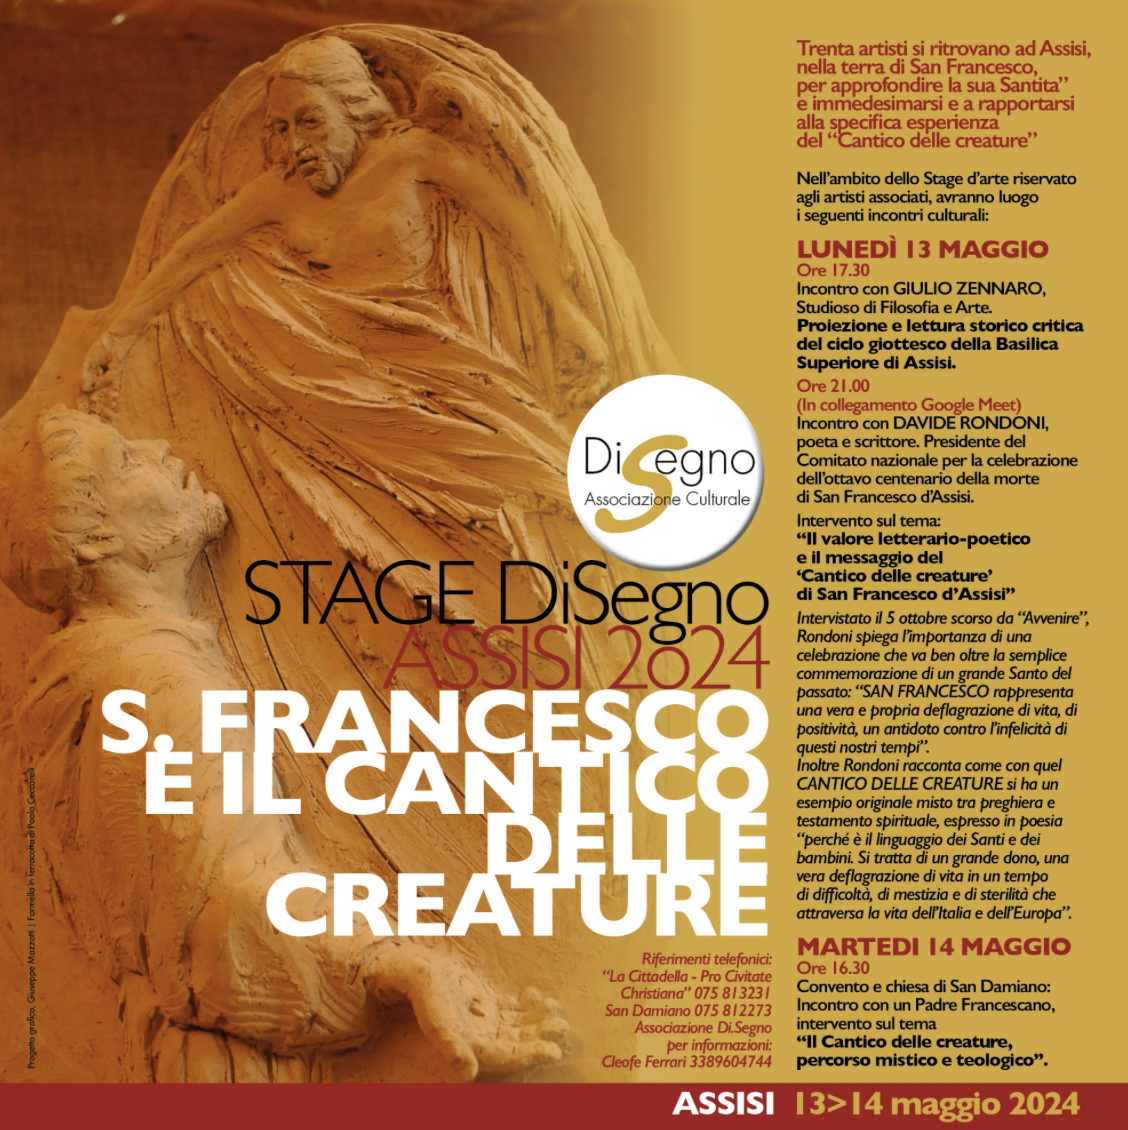 Featured image for “Assisi: In occasione dell’800 anniversario sul Cantico delle Creature”